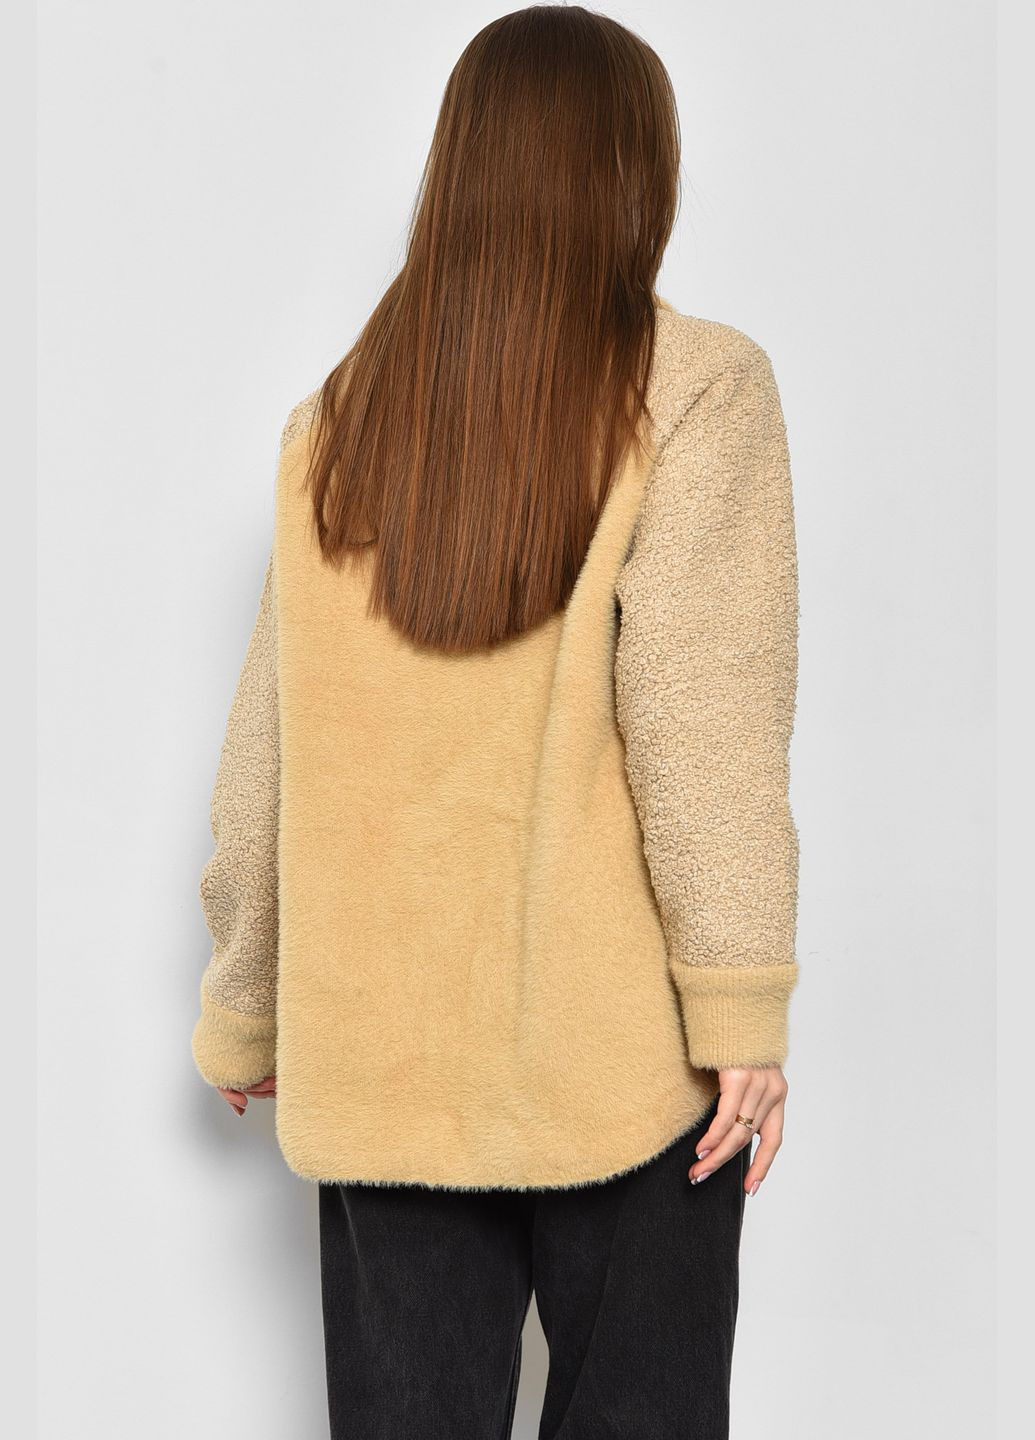 Светло-коричневое демисезонное Пальто женское полубатальное из альпаки светло-коричневого цвета Let's Shop